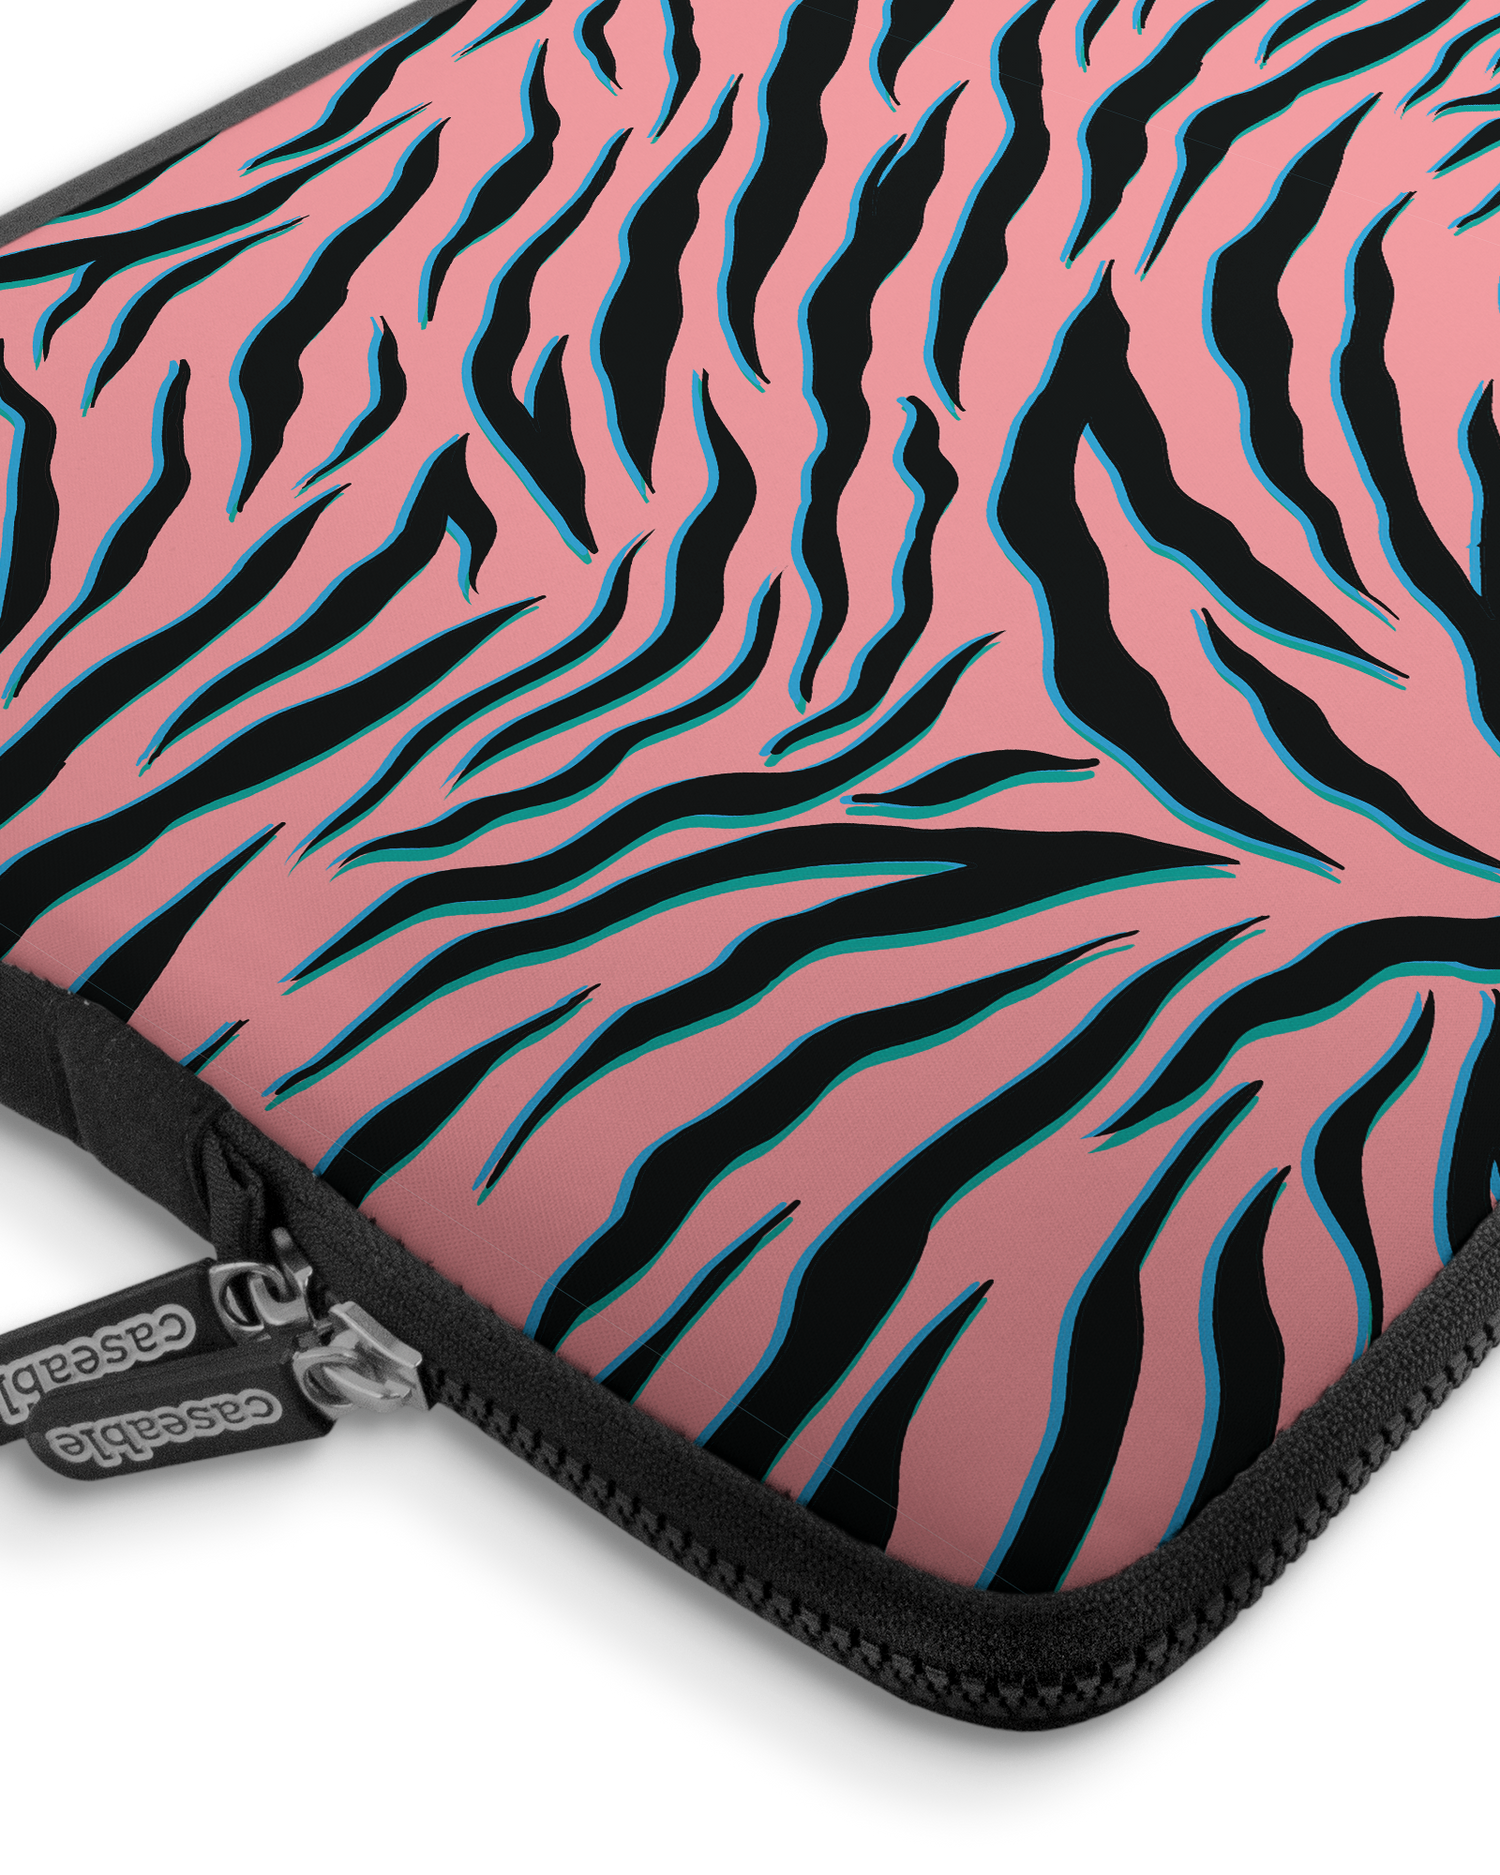 Pink Zebra Premium Laptoptasche 17 Zoll mit Gerät im Inneren